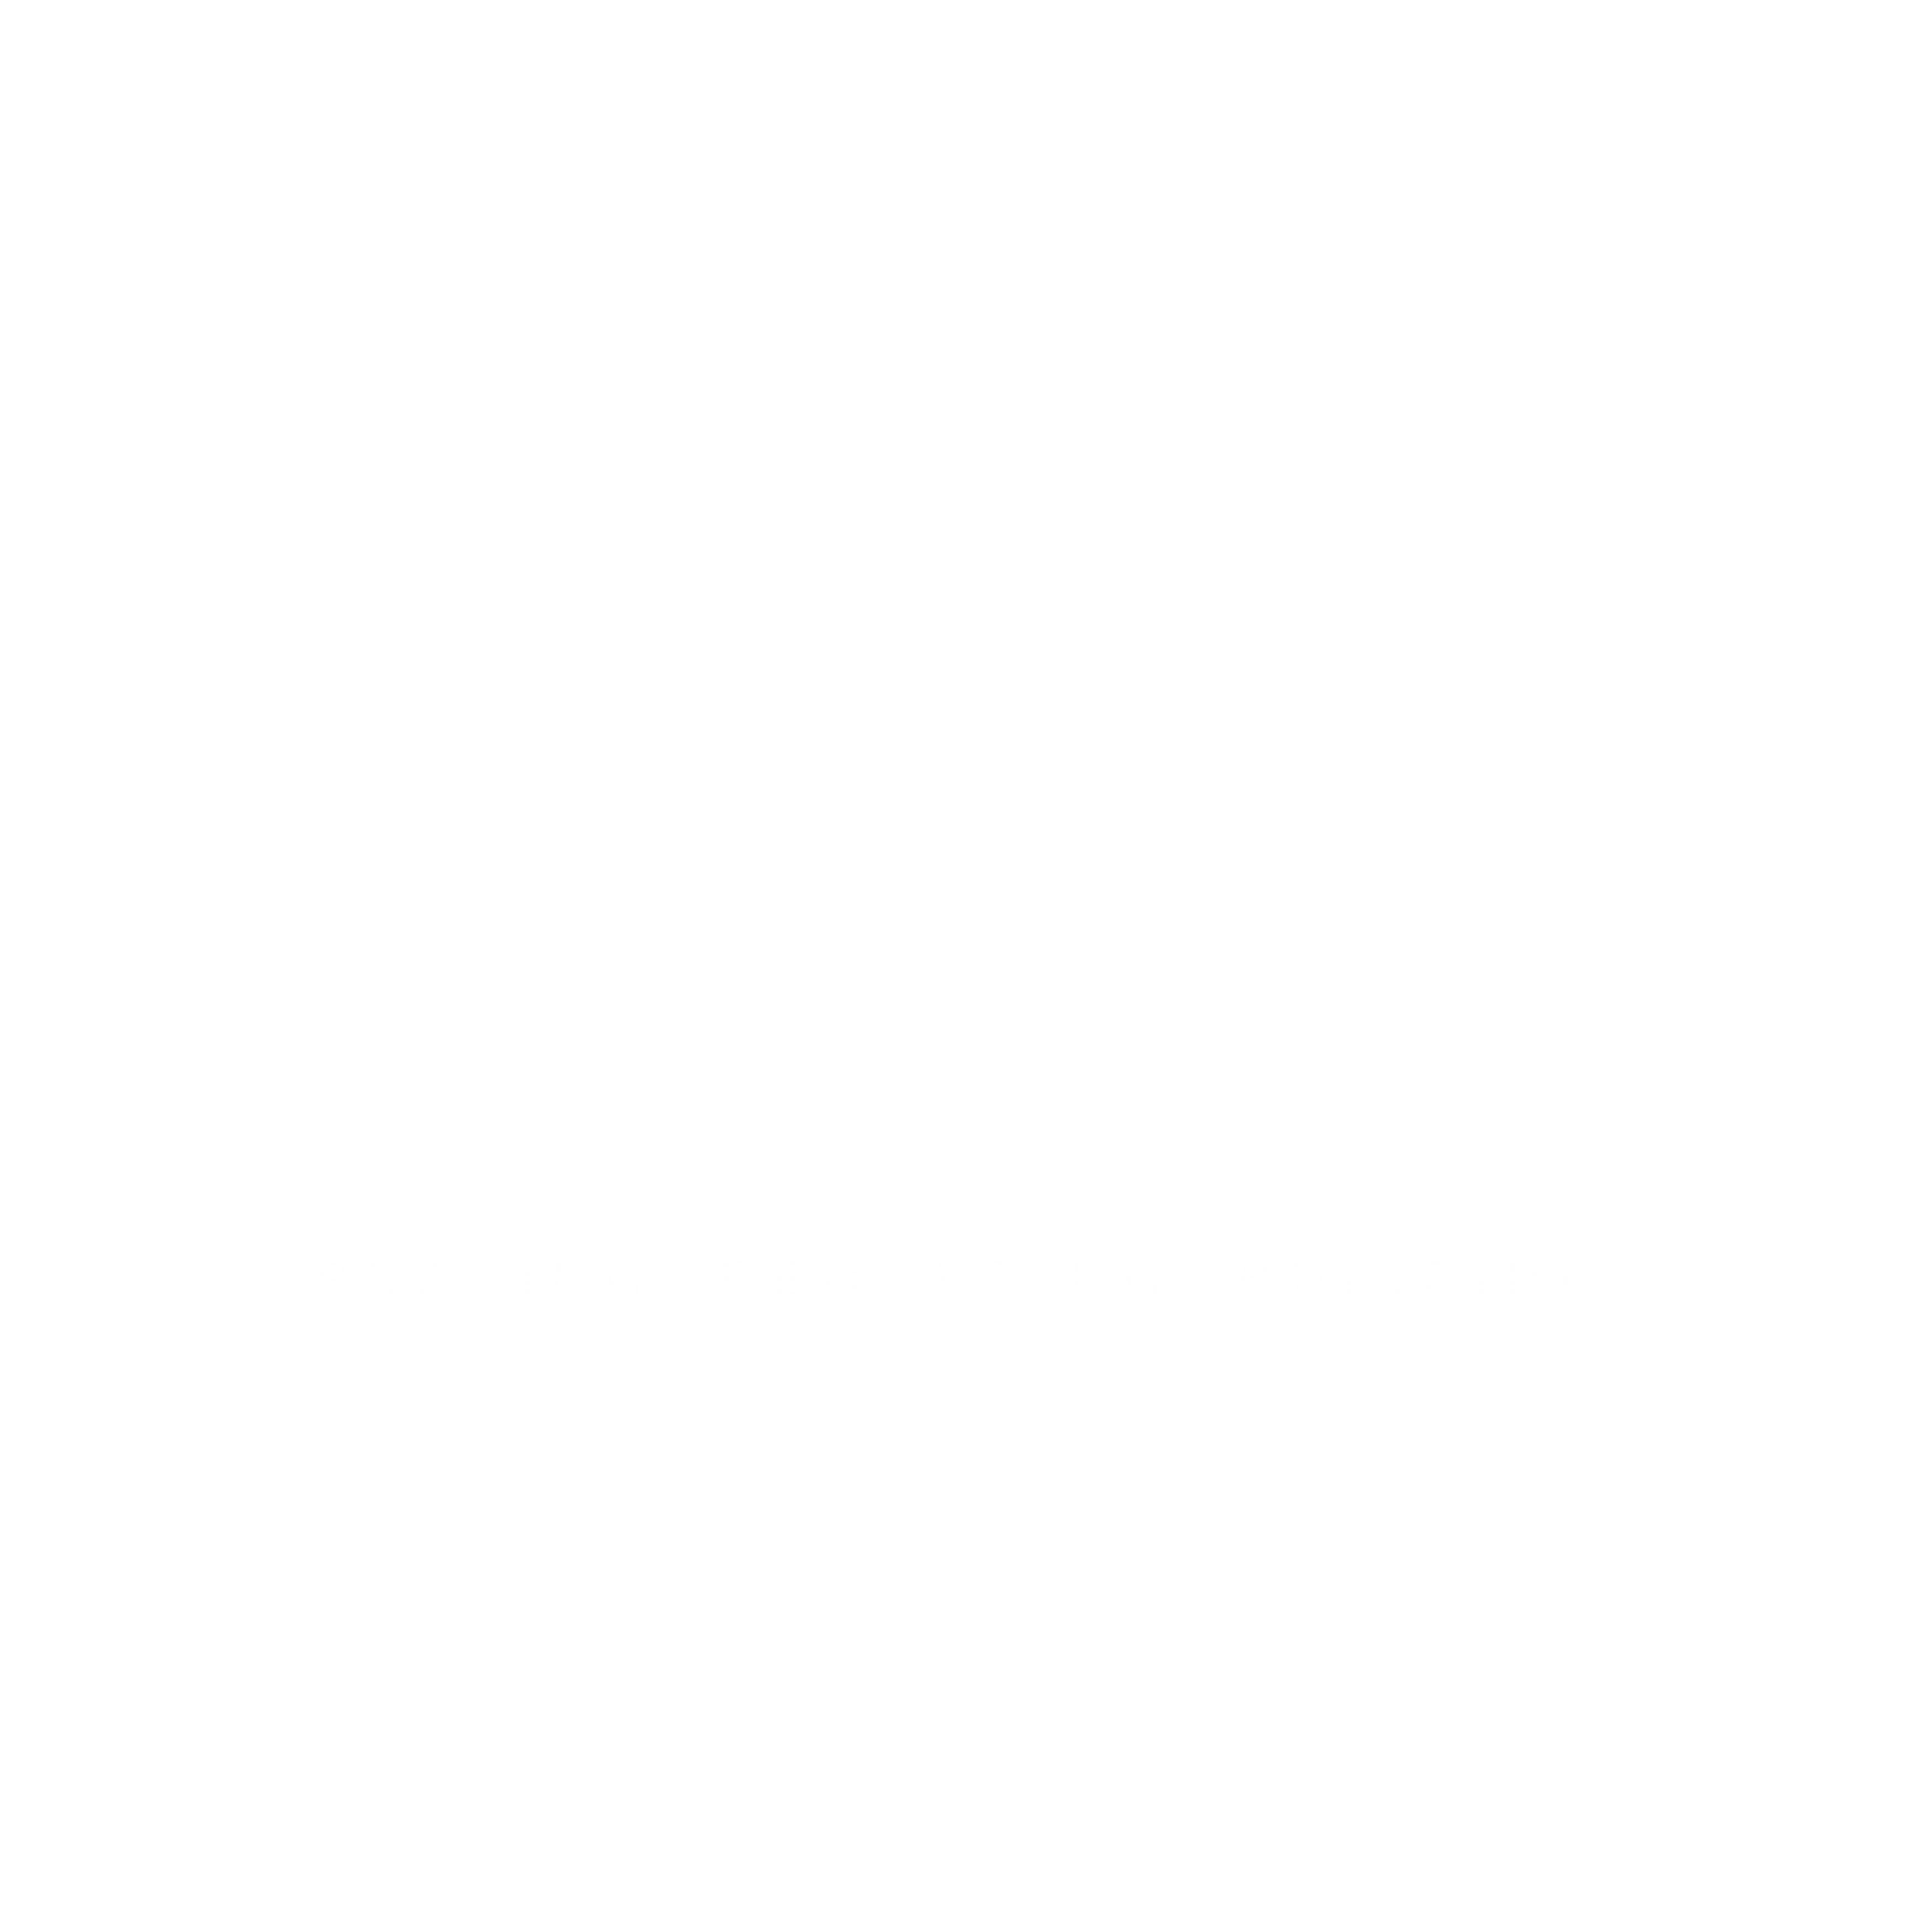 Steve Wilson Music